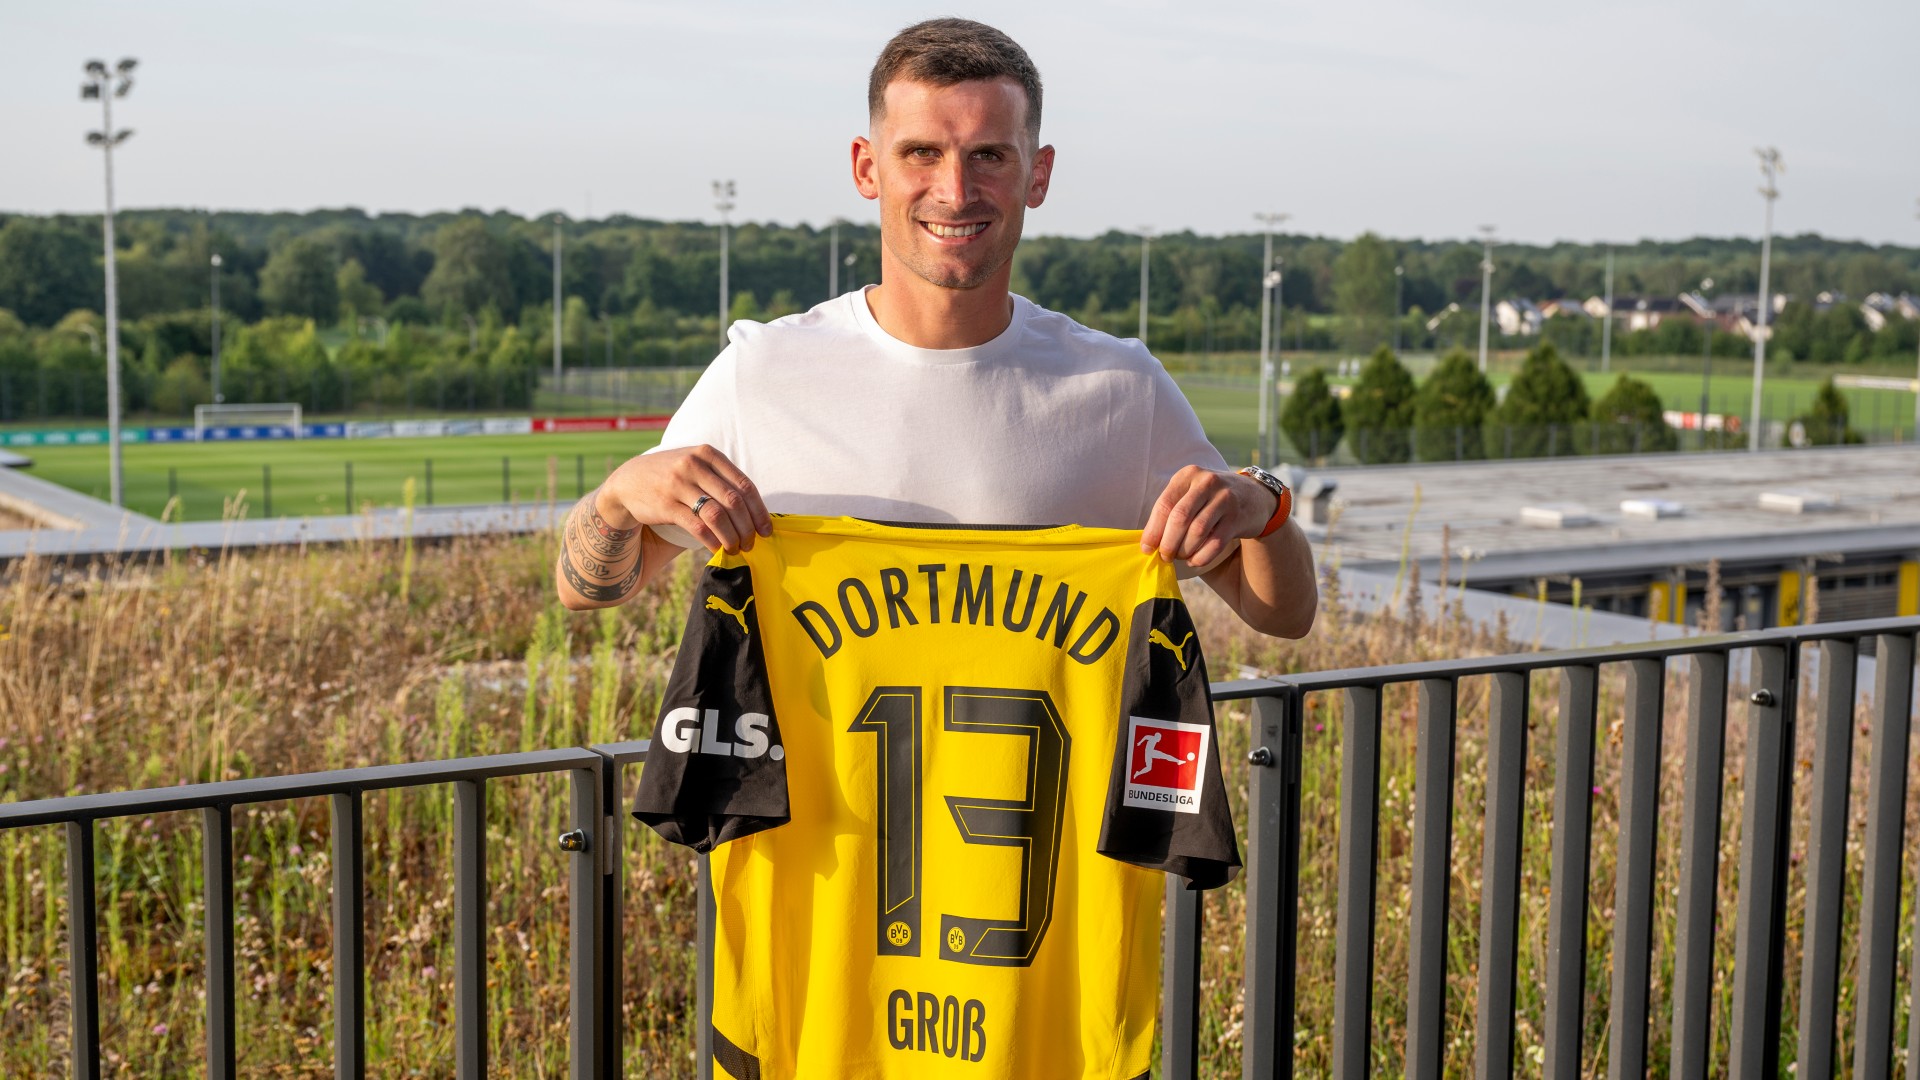 Gross signs for Dortmund